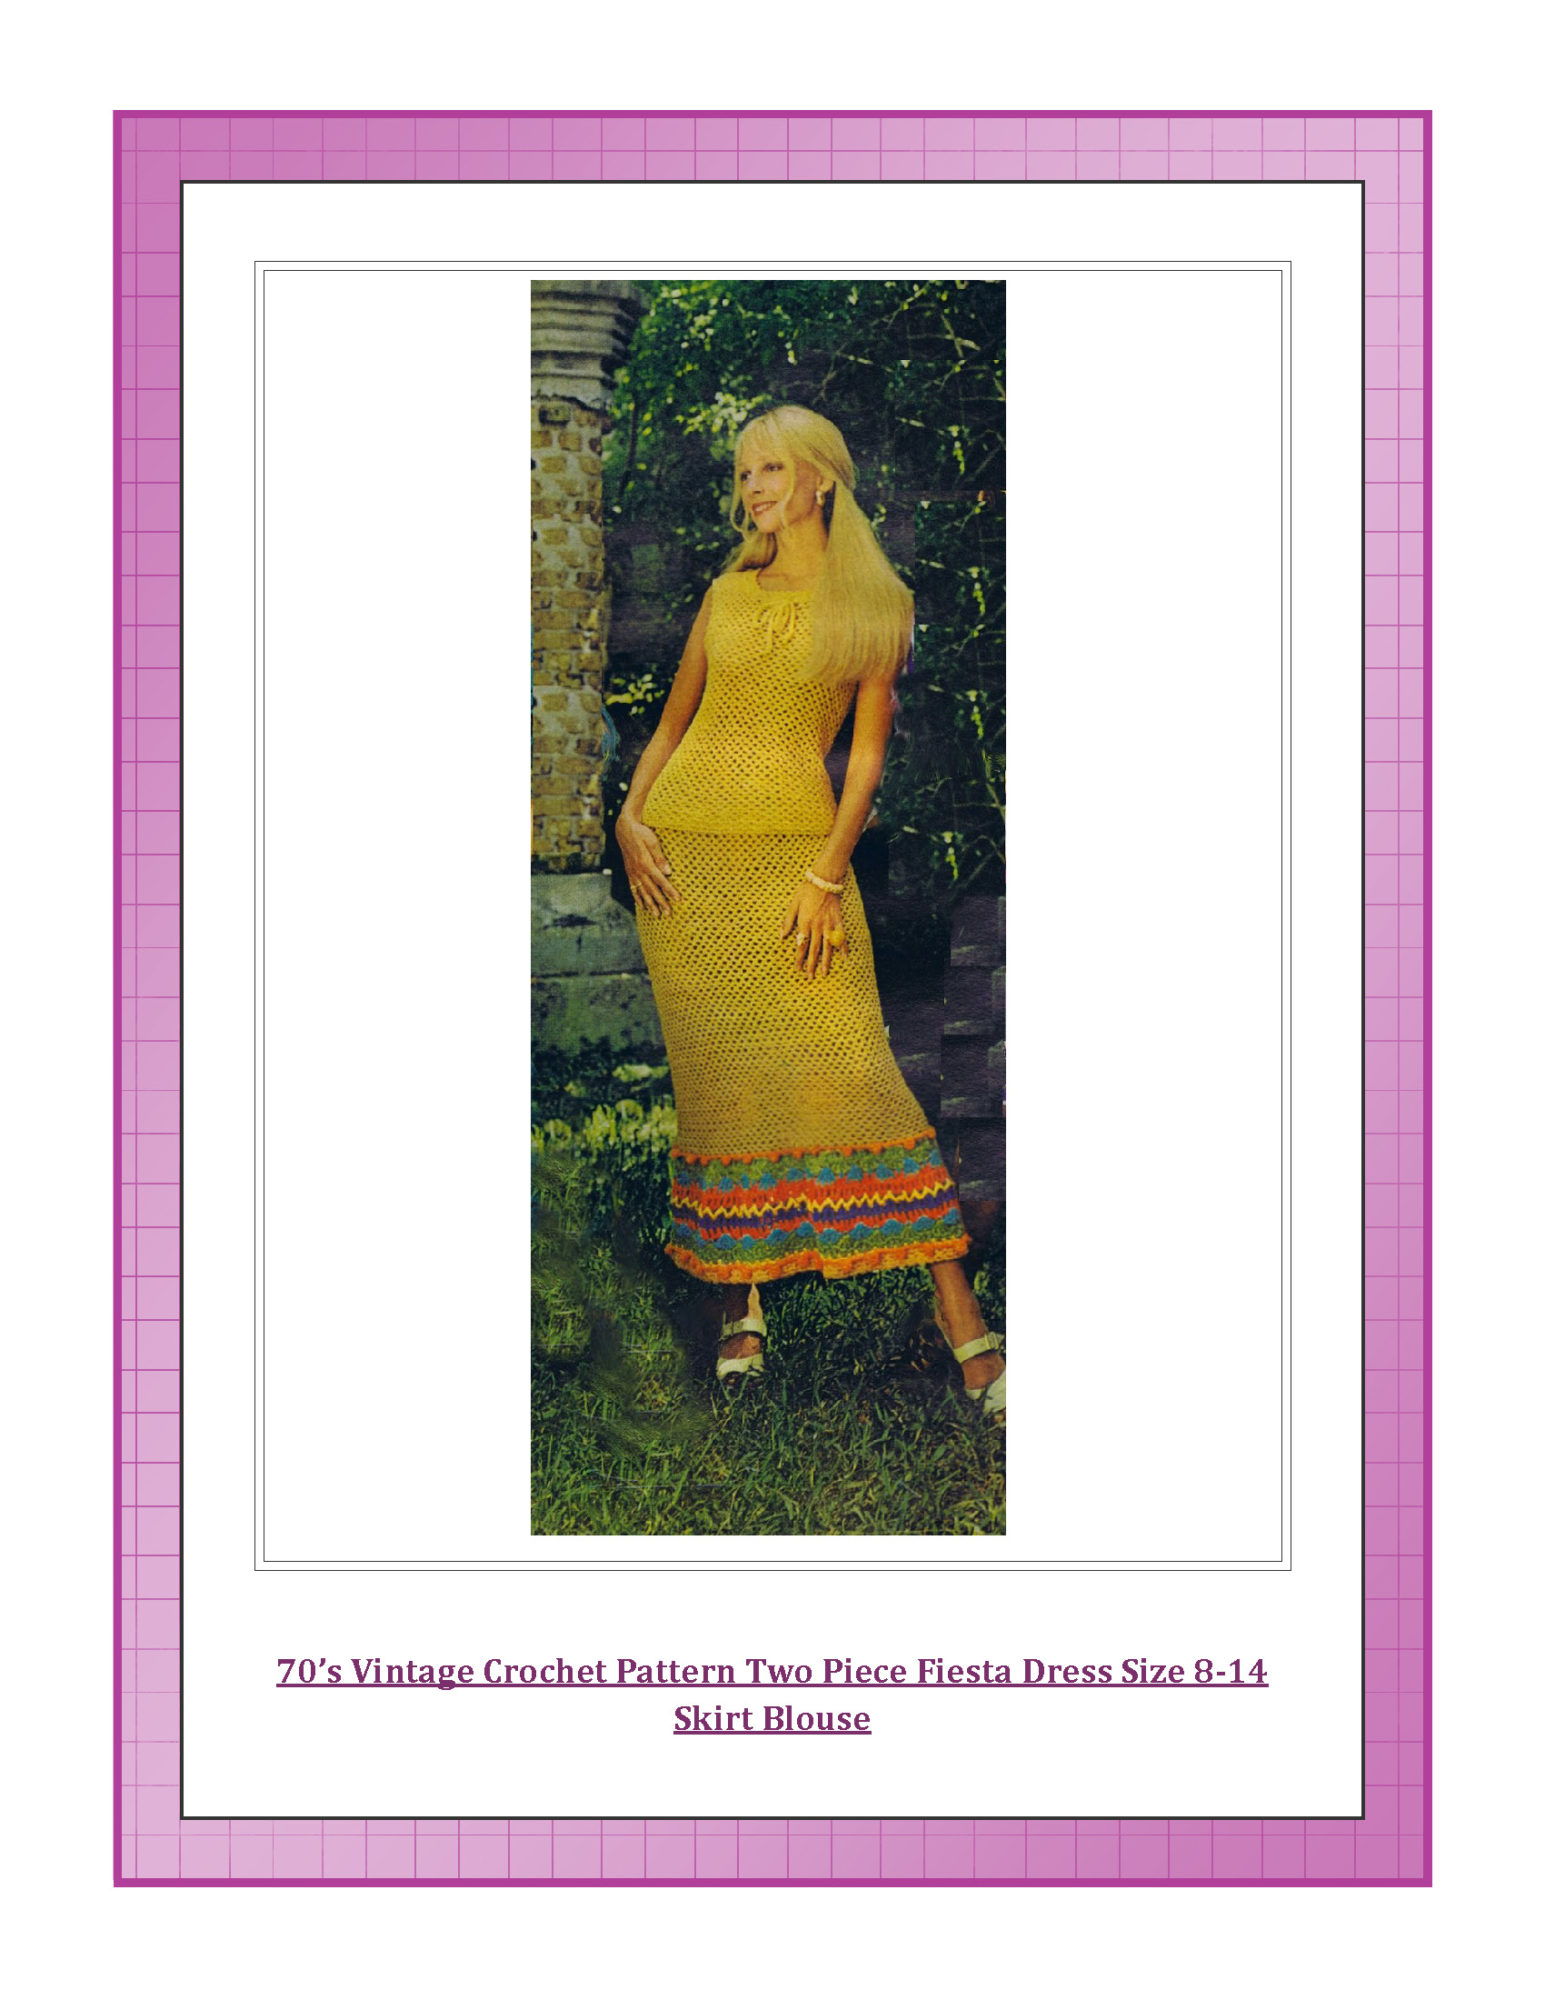 70’s Vintage Crochet Pattern Two Piece Fiesta Dress Size 8-14 Skirt Blouse 